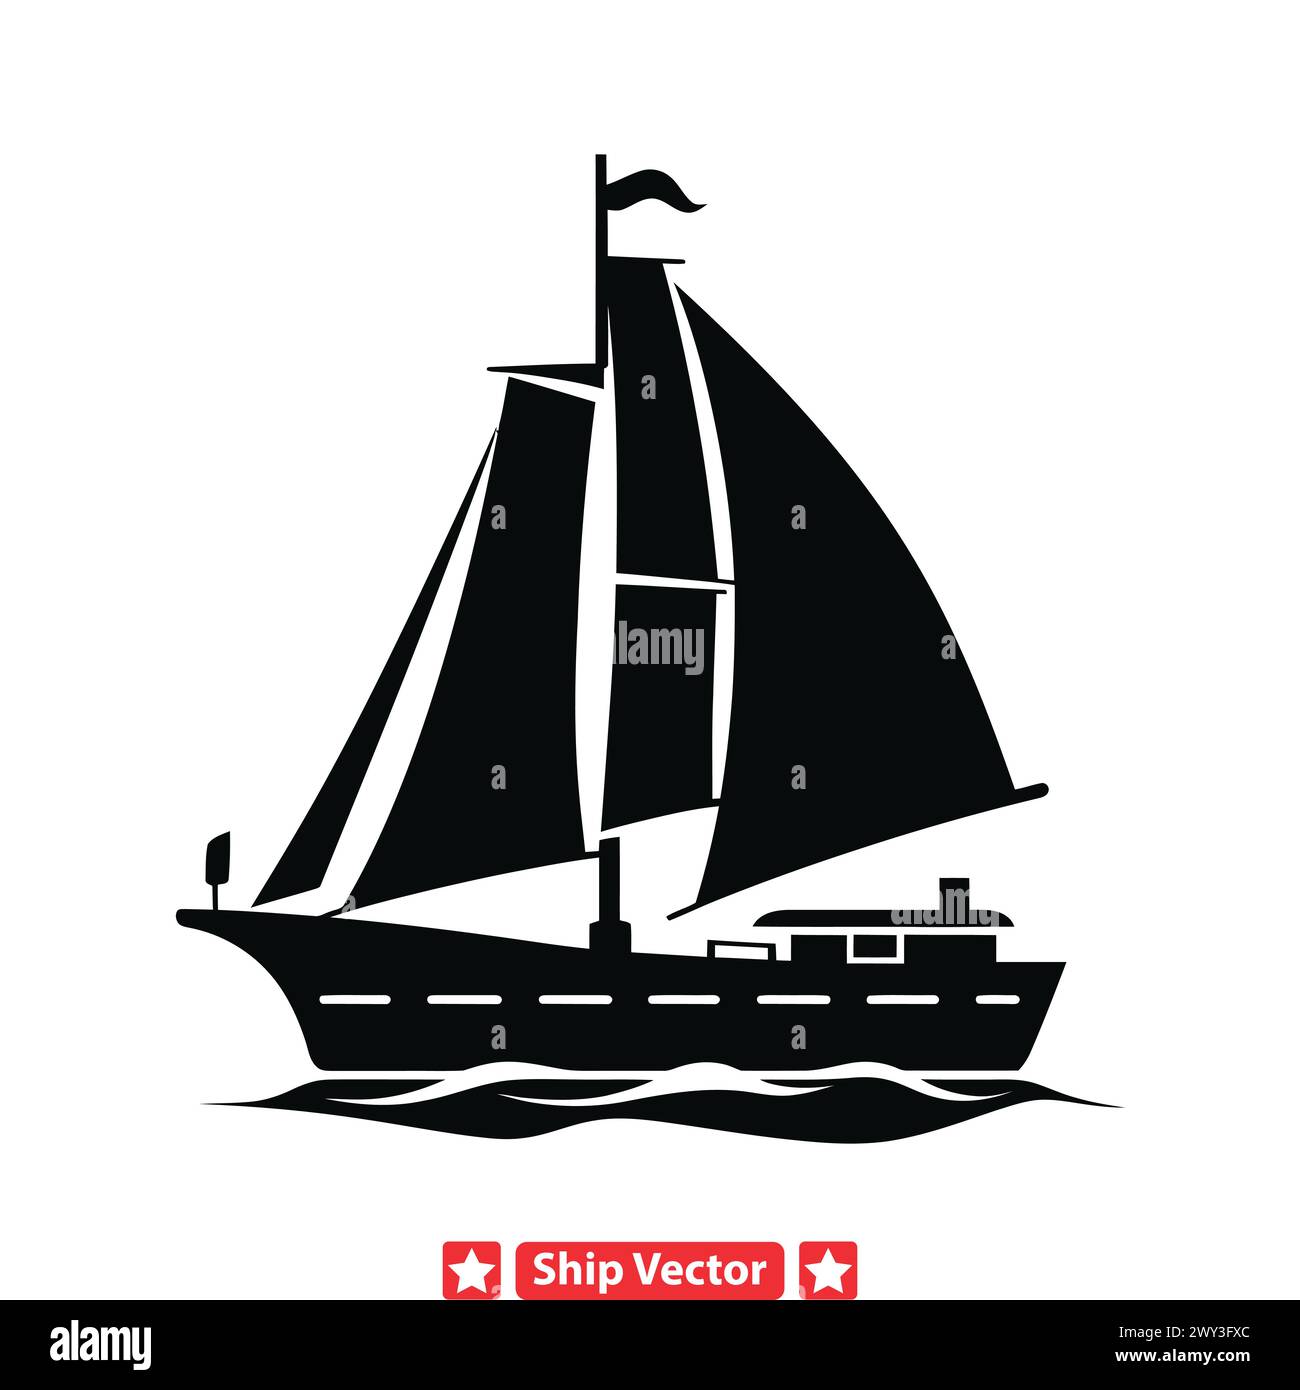 Voyage de découverte silhouettes de navires inspirants encourageant l'exploration et la curiosité Illustration de Vecteur